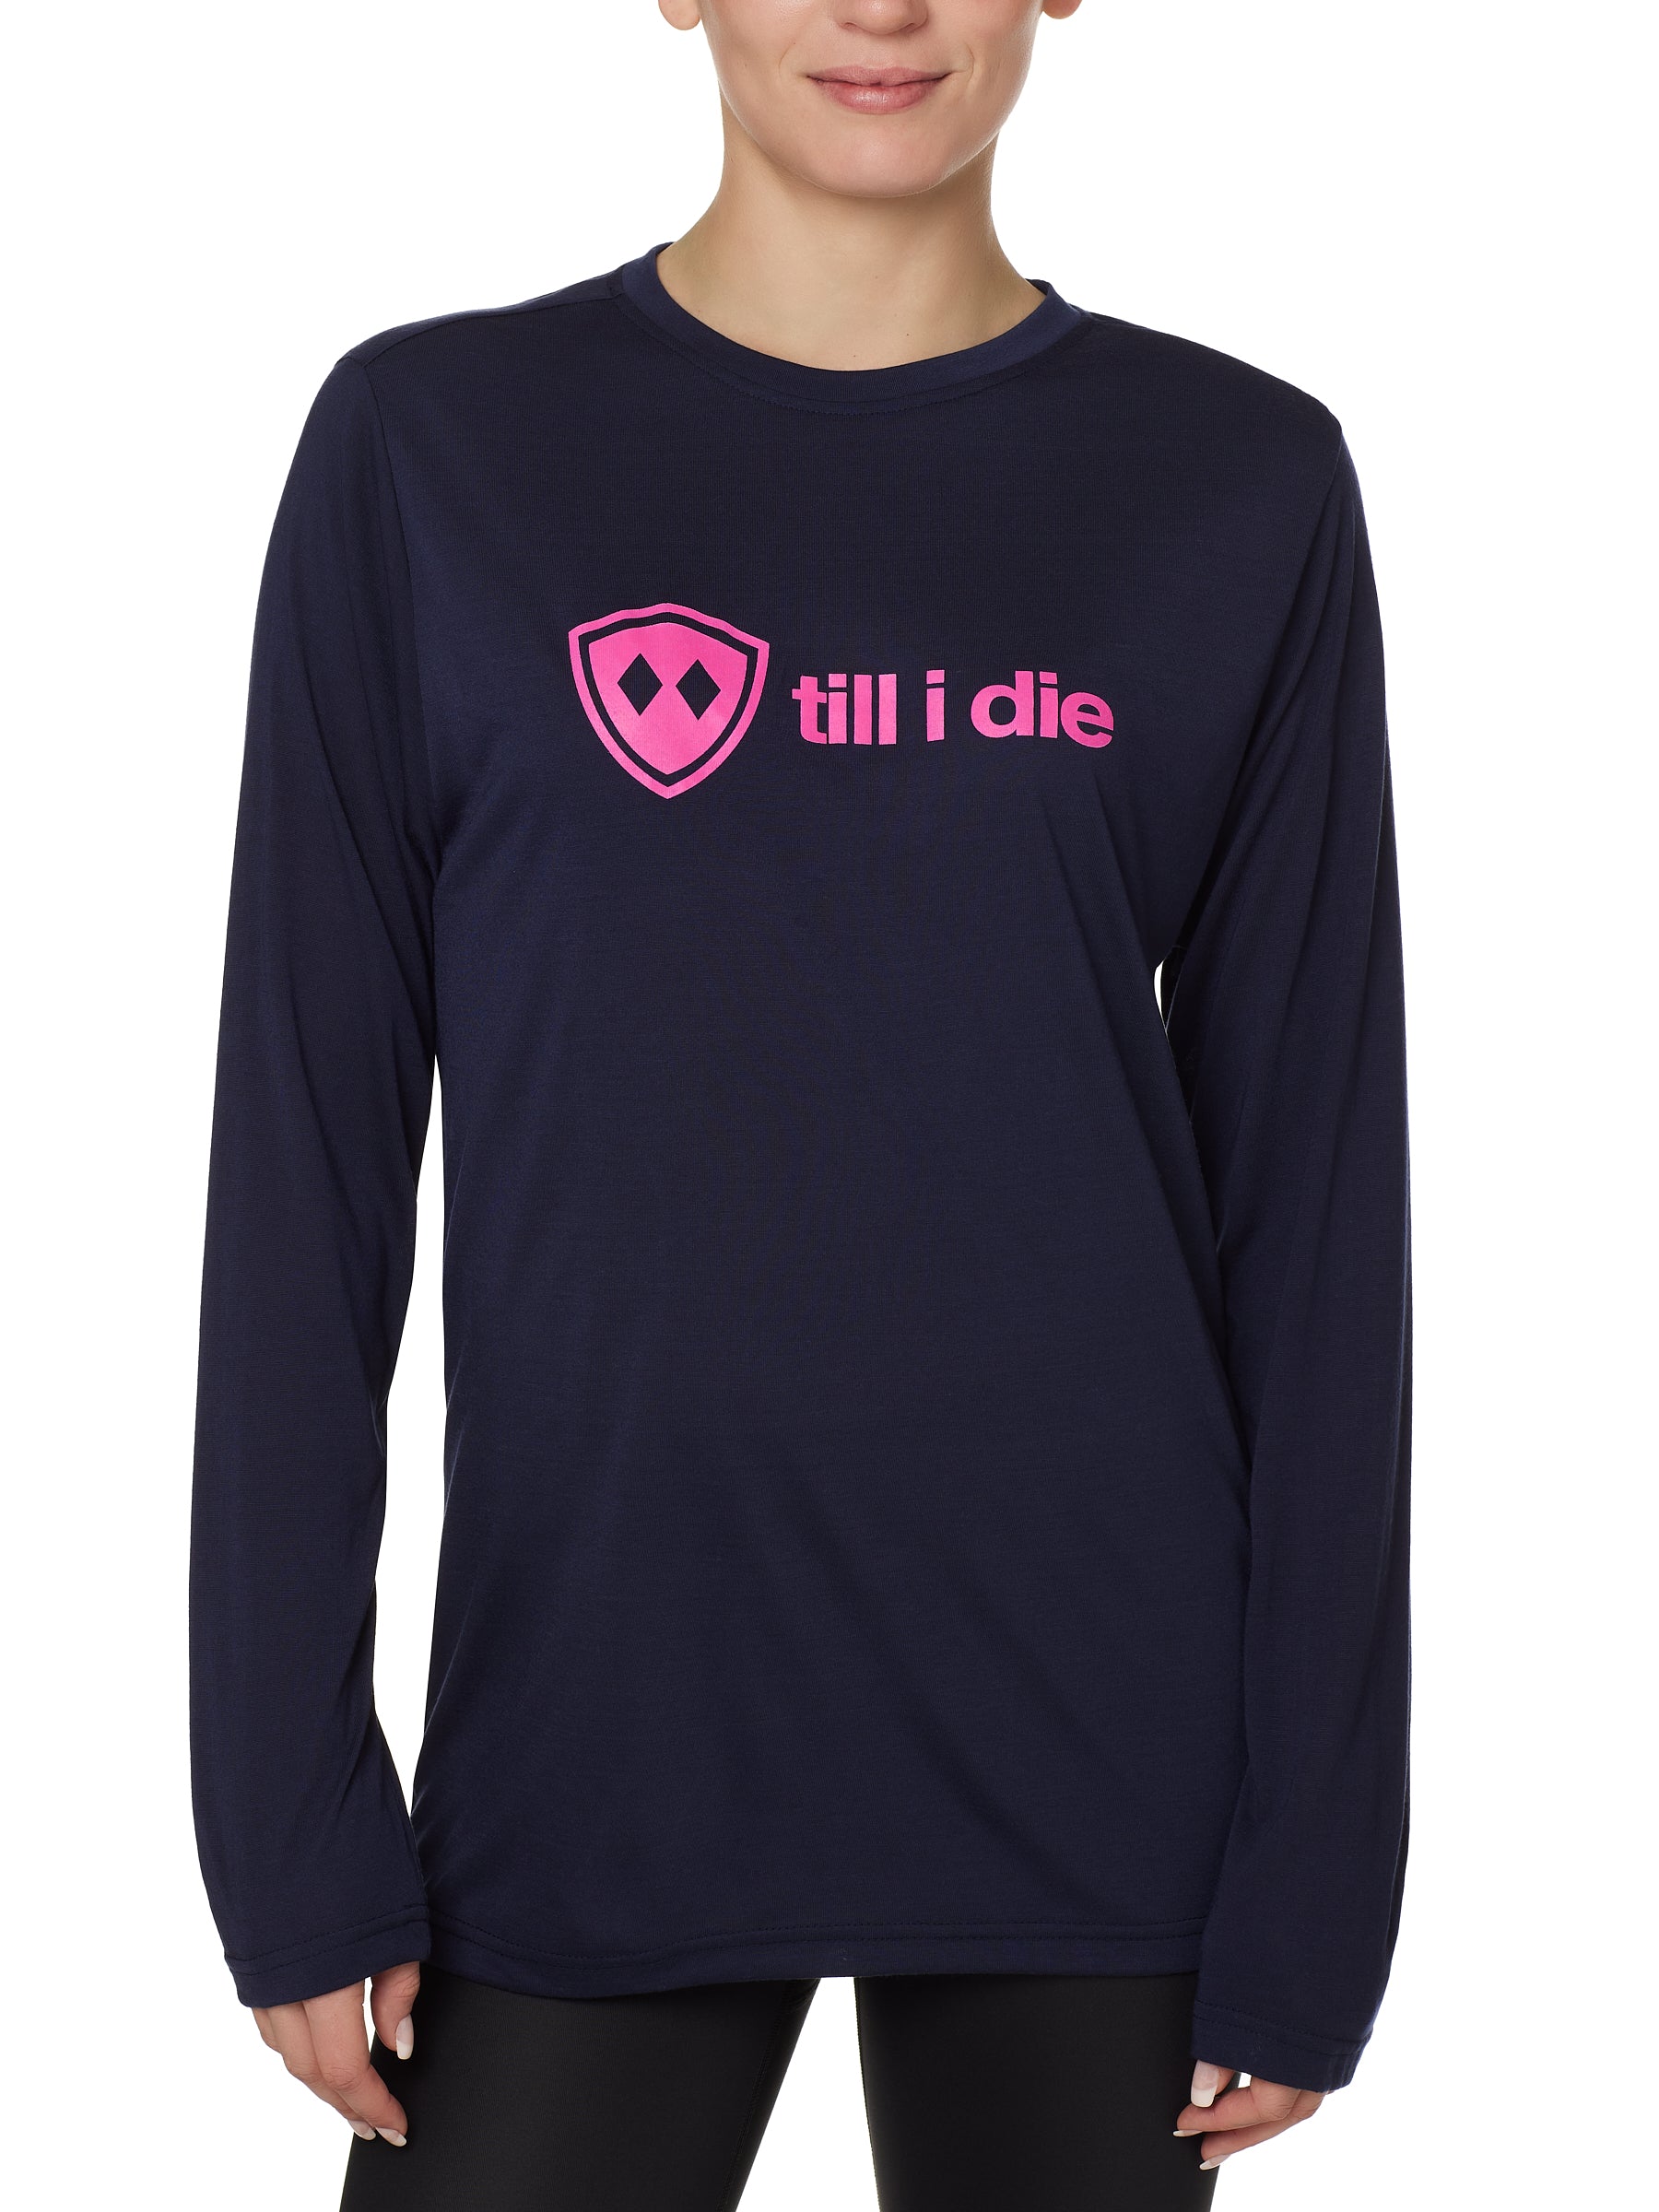 Till I Die Logo // Long Sleeve // Pink Logo